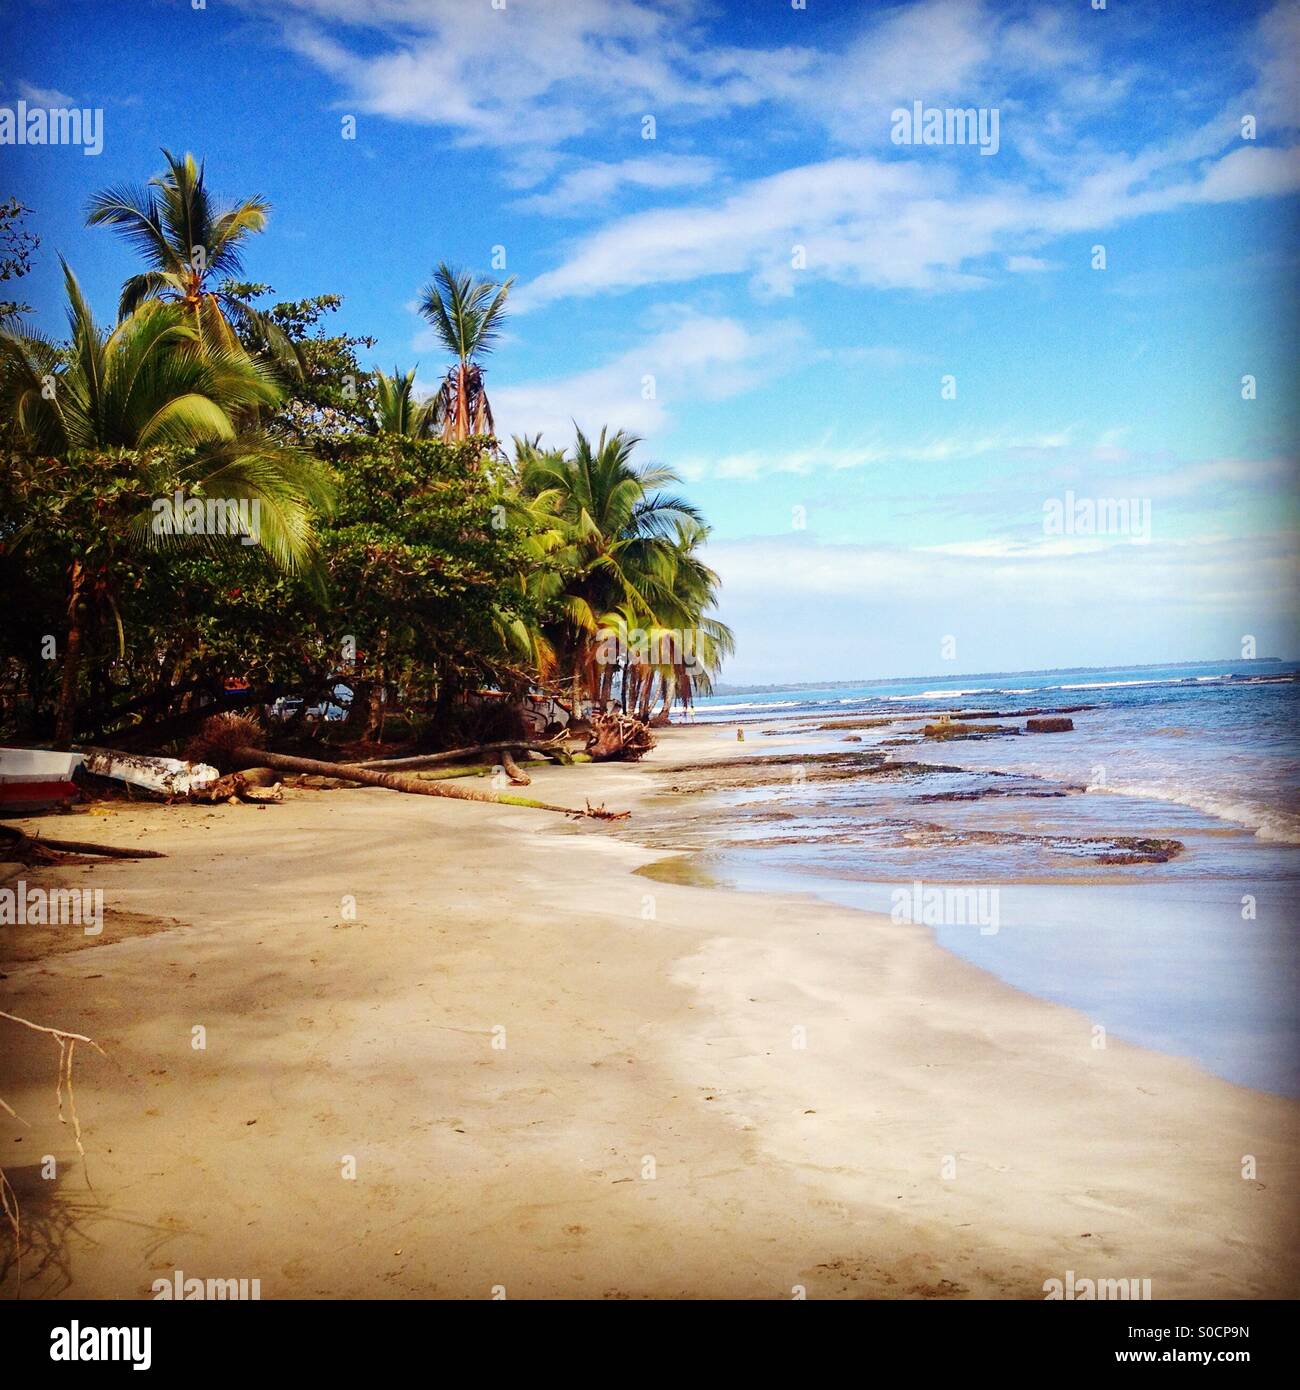 Una playa del Pacífico de Costa Rica Foto de stock